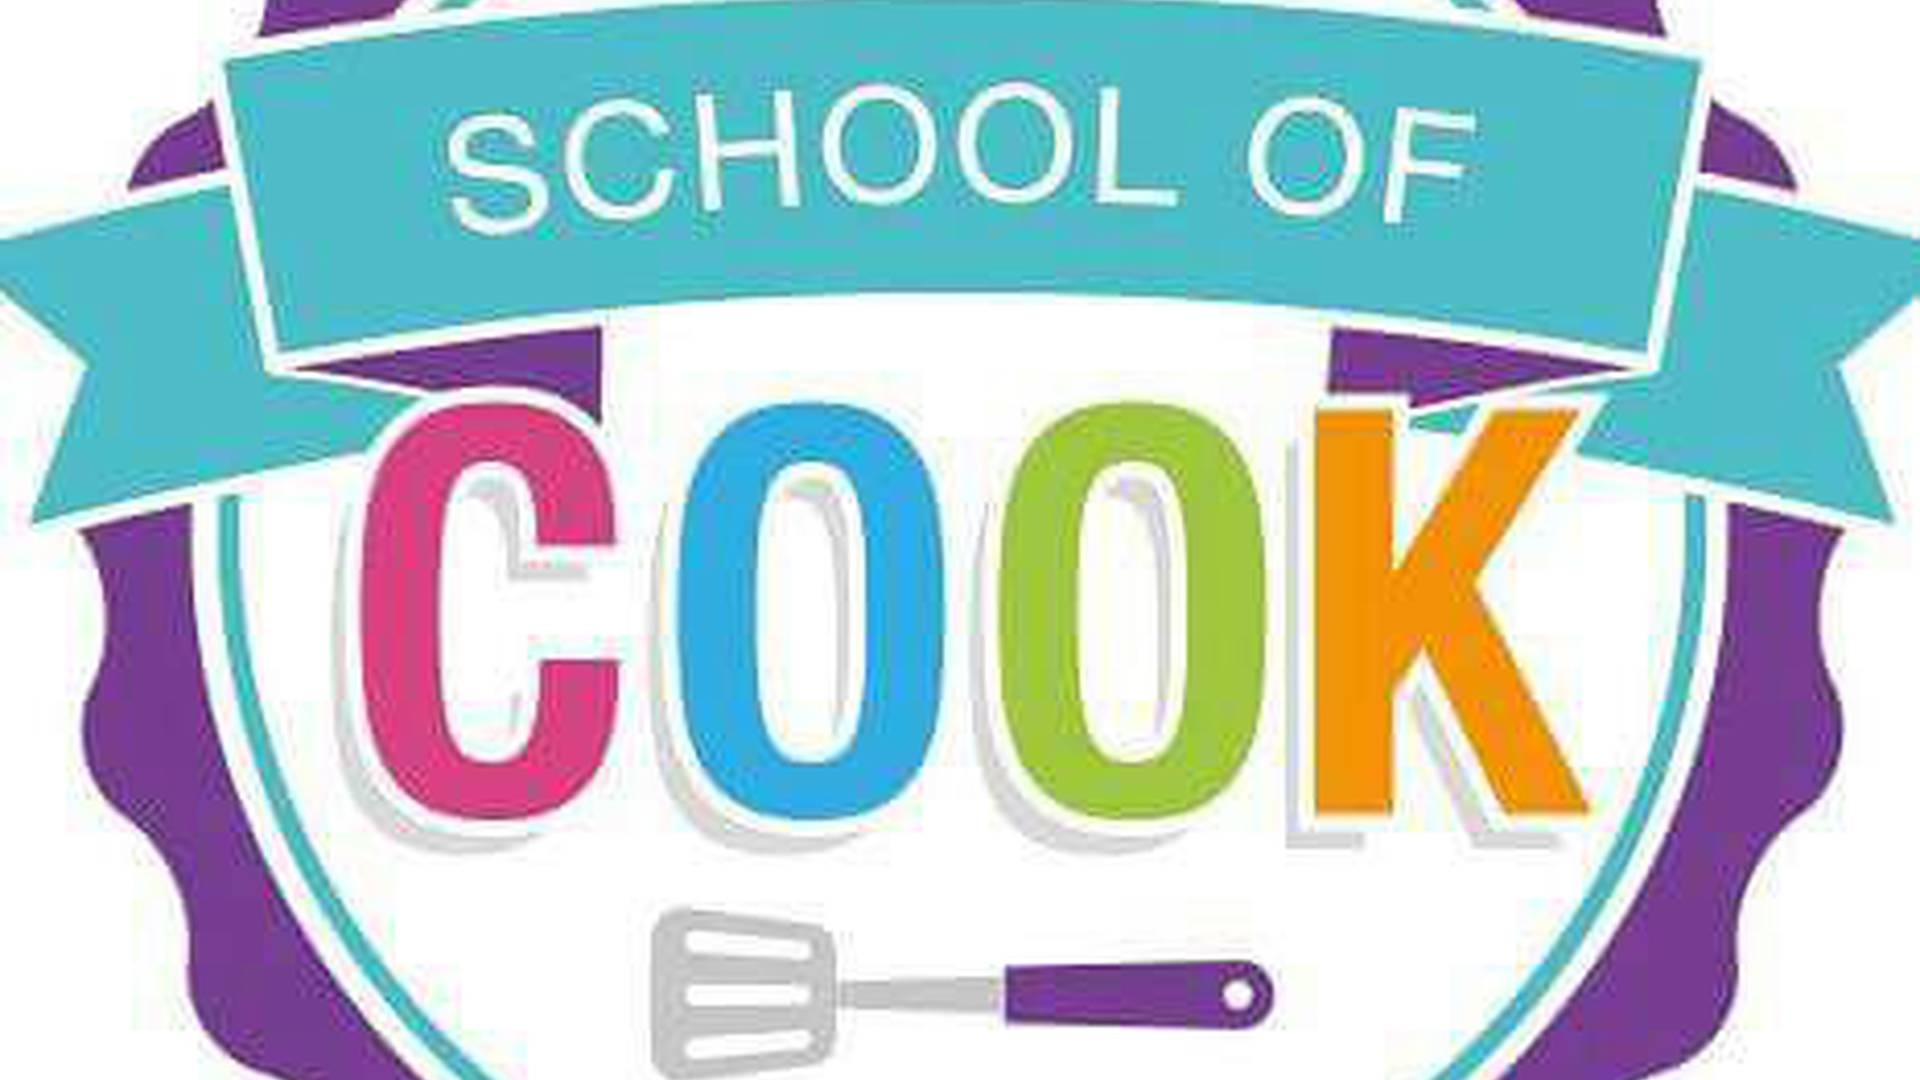 School of Cook photo